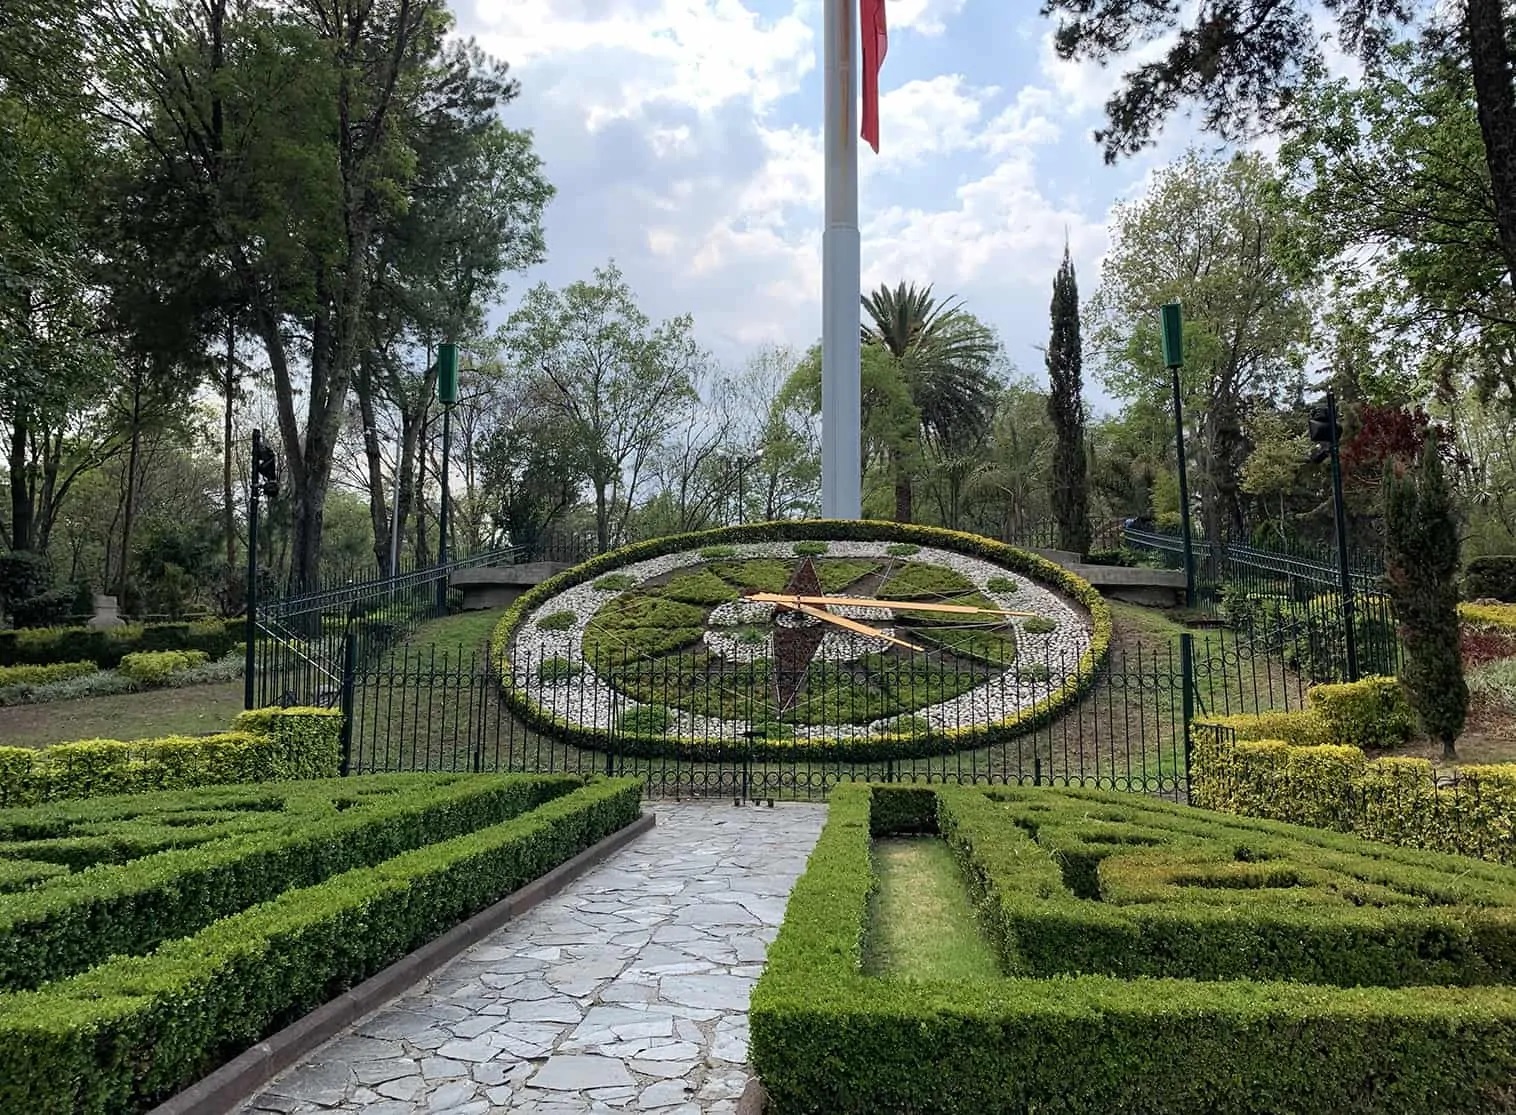  reloj Floral, creado por una prestigiosa casa relojera de Puebla y localizado al final de una amplia escalinata que también conduce a la plaza Dolores del Río
    
                            